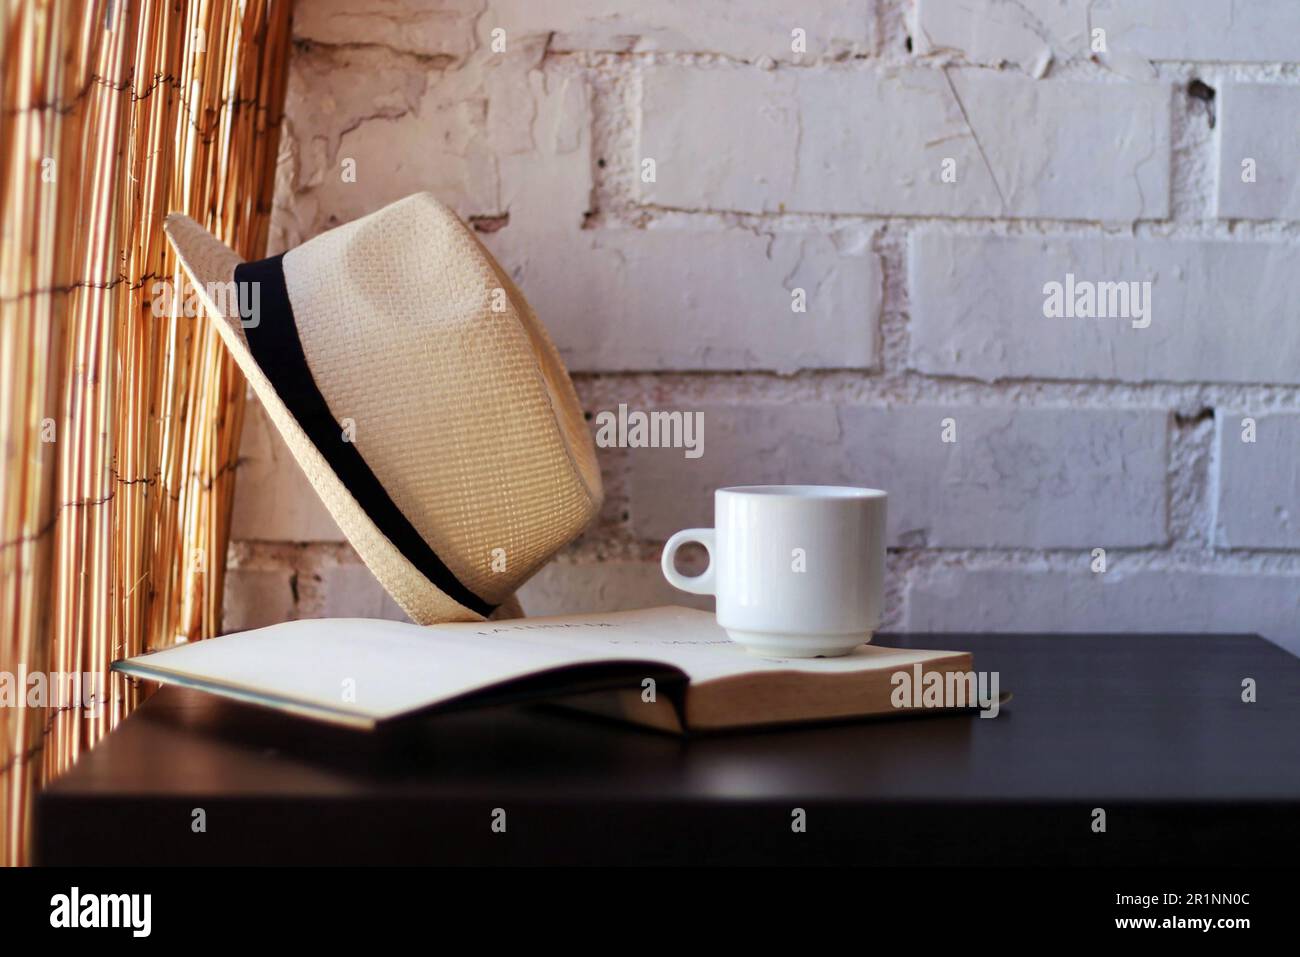 Tazza, libro aperto e cappello di paglia su un tavolo nero. Foto Stock